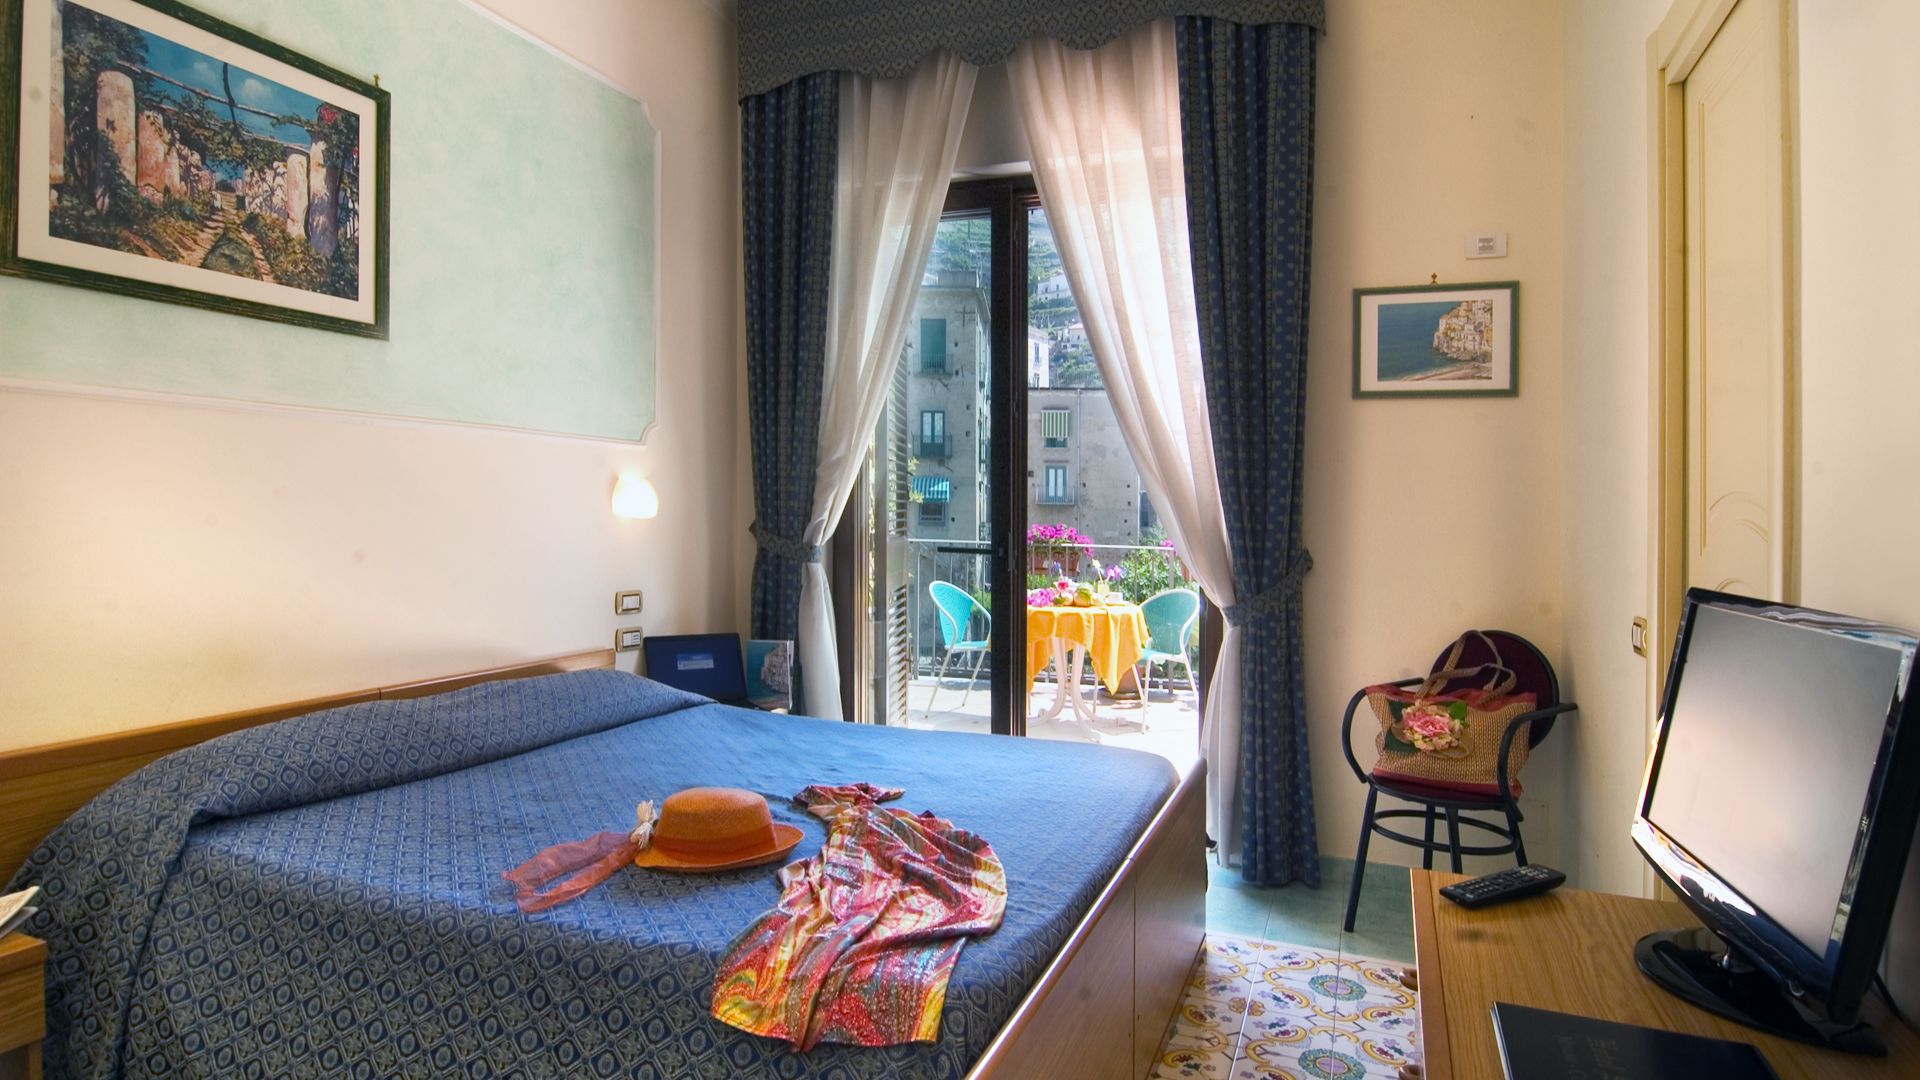 Værelse på Hotel Santa Lucia - Amalfikysten, Italien - Kulturrejser